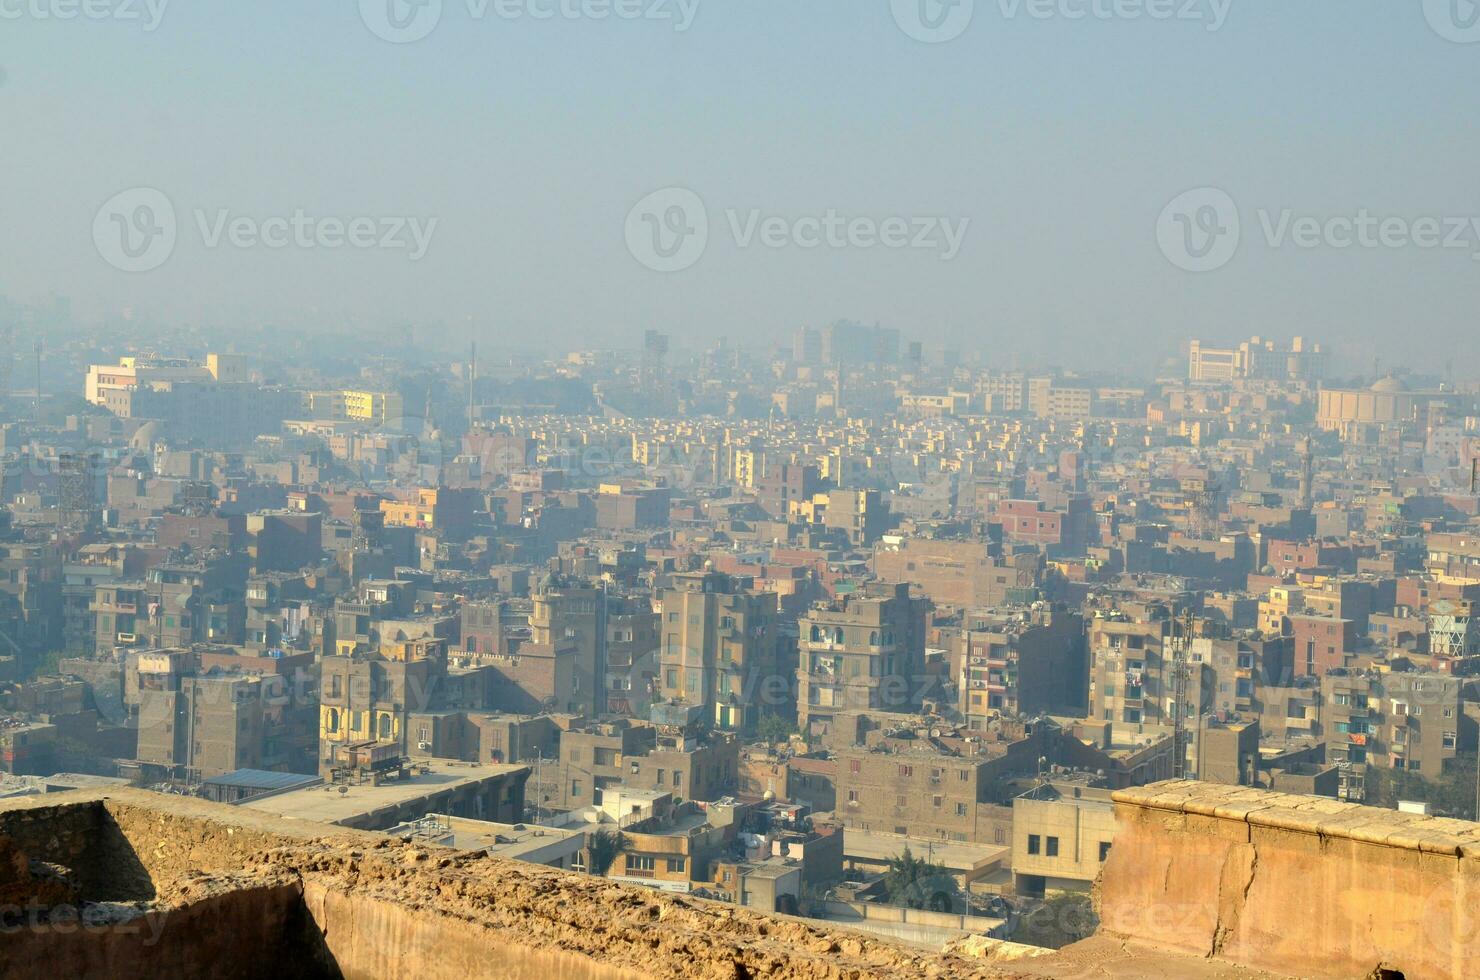 Kairo Stadt im Ägypten foto